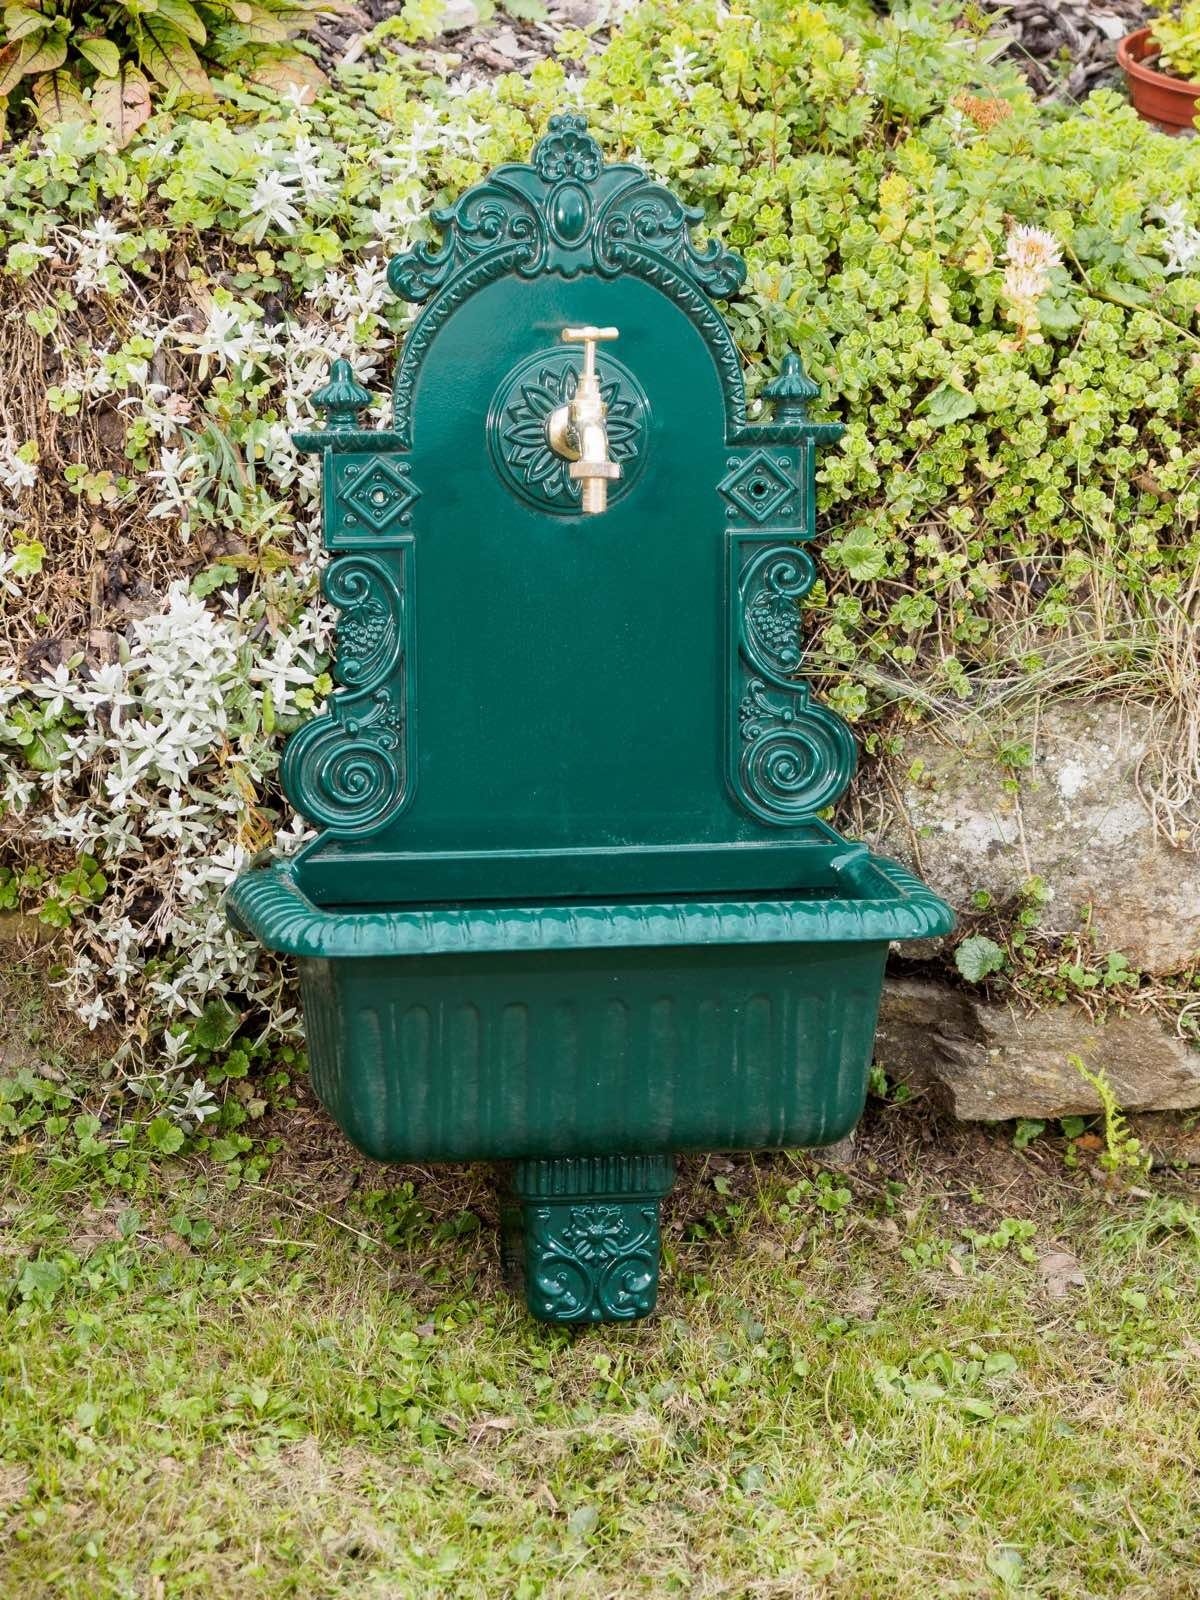 Aubaho Gartenbrunnen »Waschbecken grün Wandbrunnen Garten Alu Brunnen  Waschplatz Bad Becken antik Stil« online kaufen | OTTO